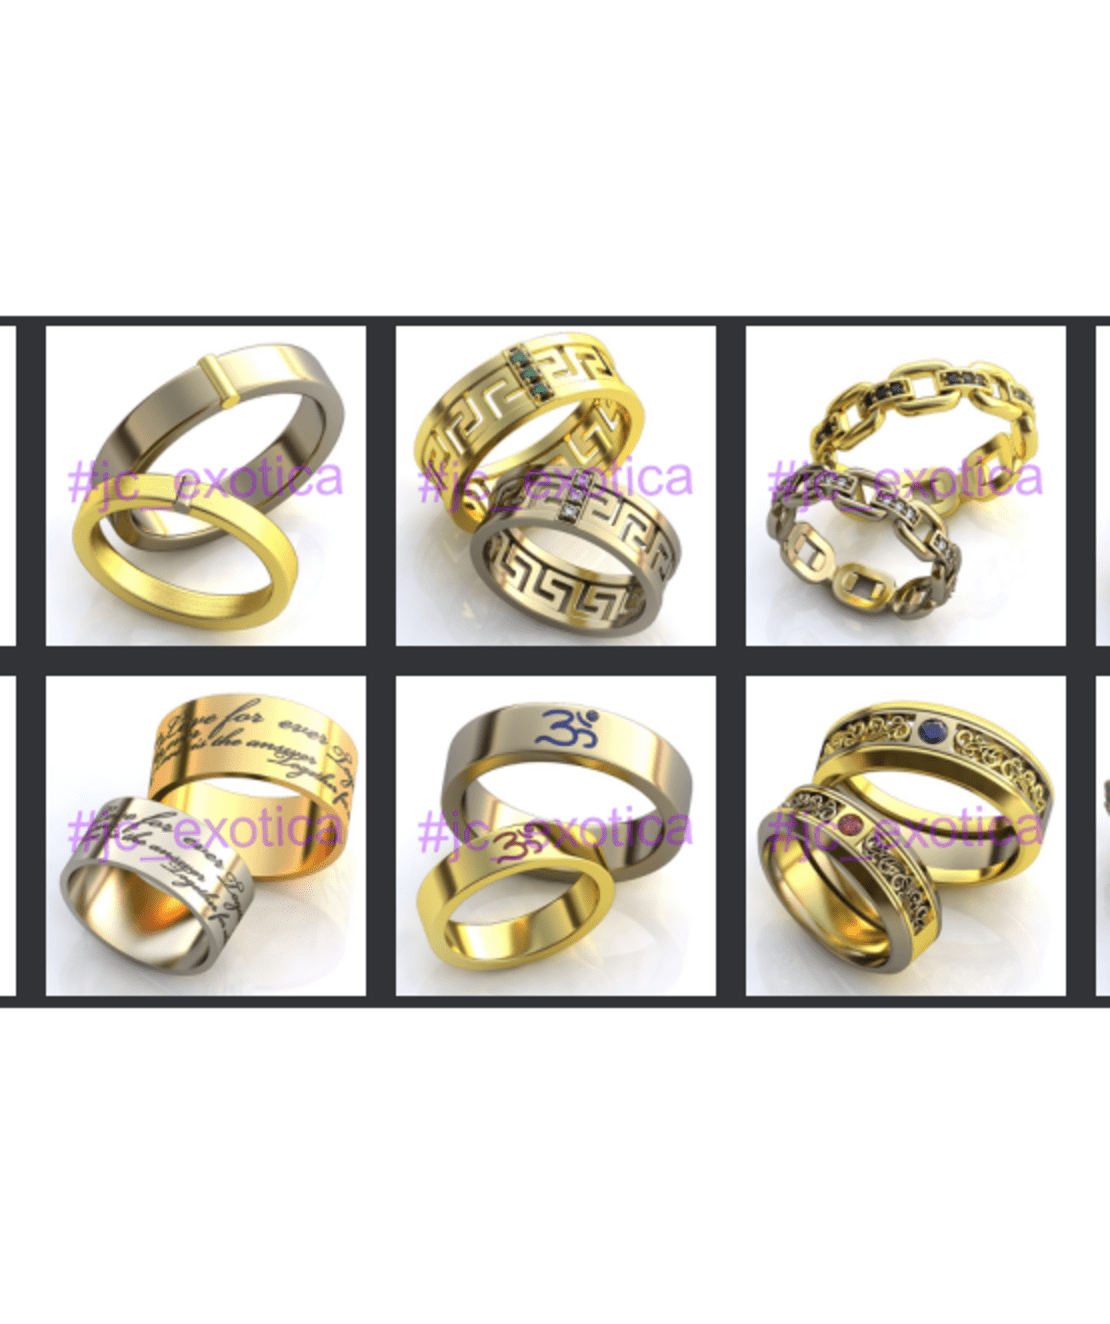 Обручальные кольца на заказ из золота и серебра с экспресс-доставкой по РФот ювелирной дизайн-студии ЮК Экзотика +79226429939